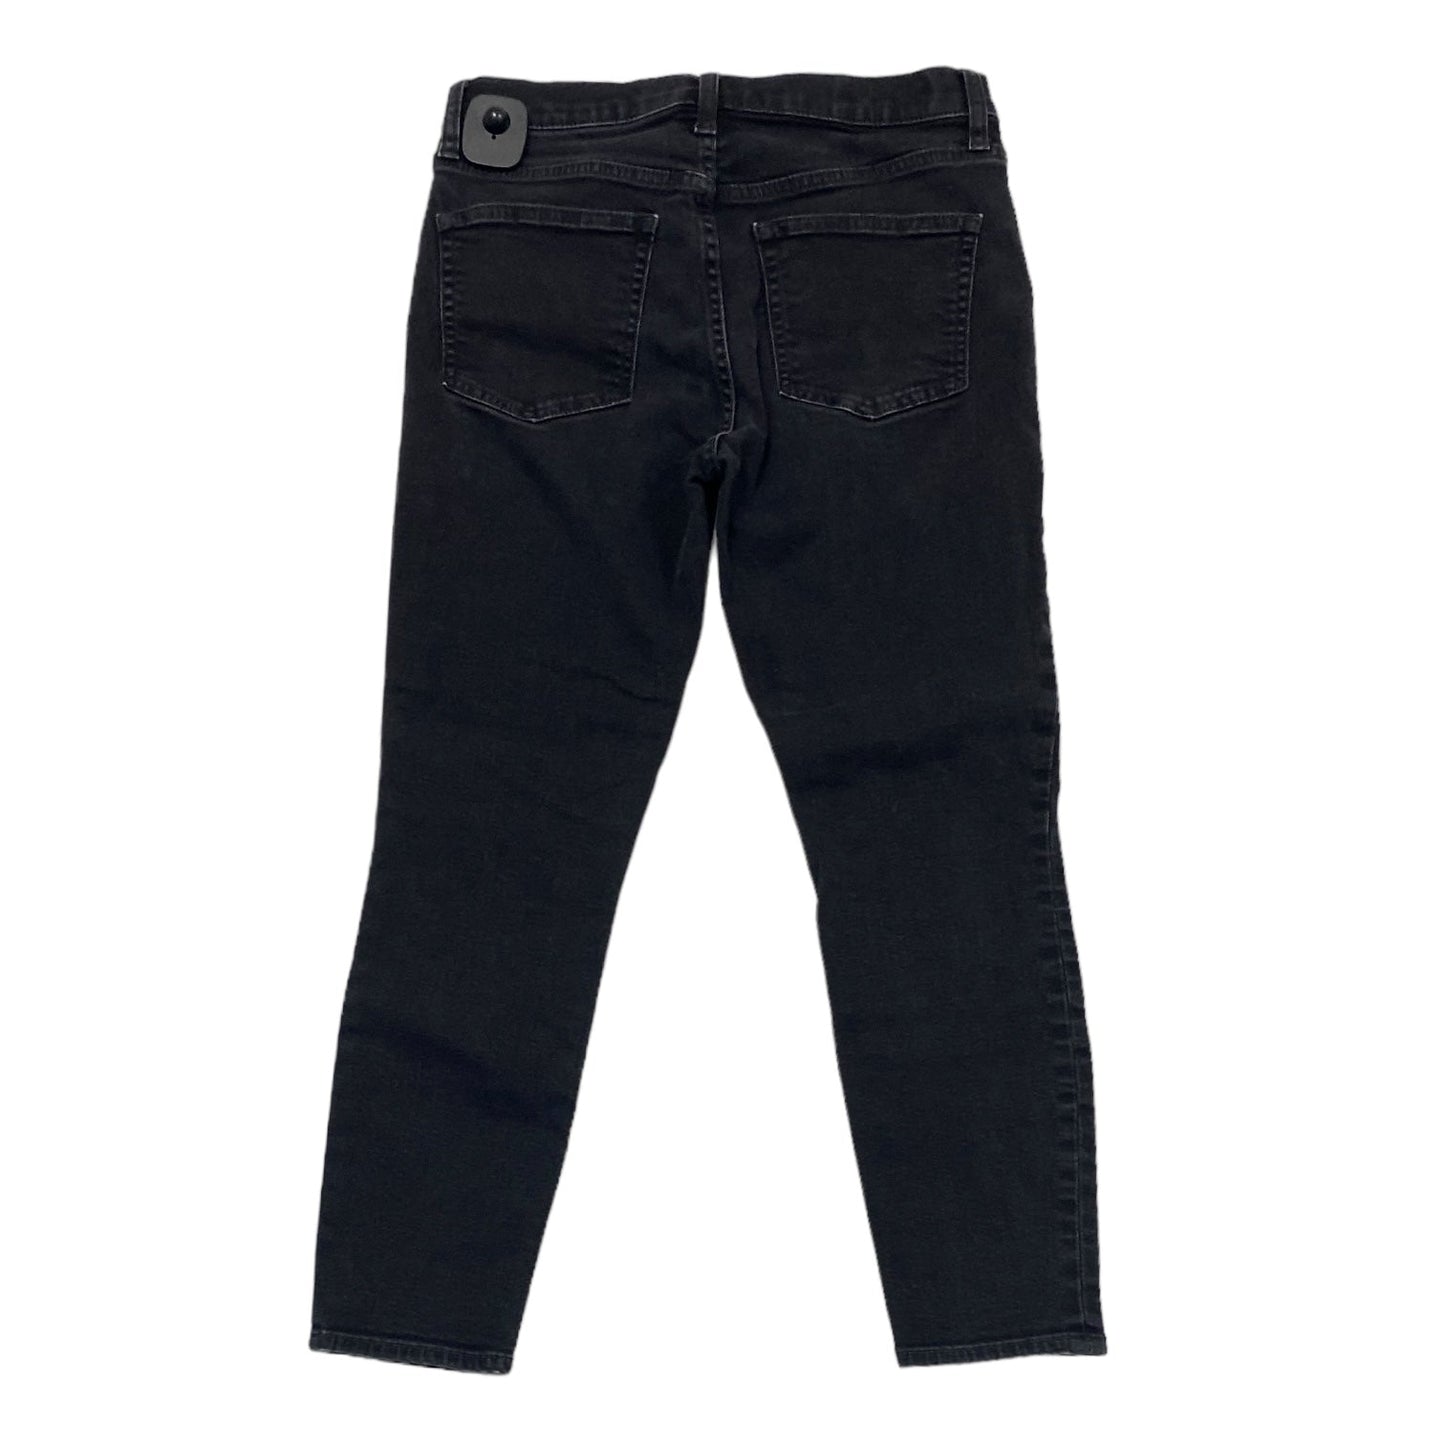 Black Denim Jeans Skinny Gap, Size 6petite